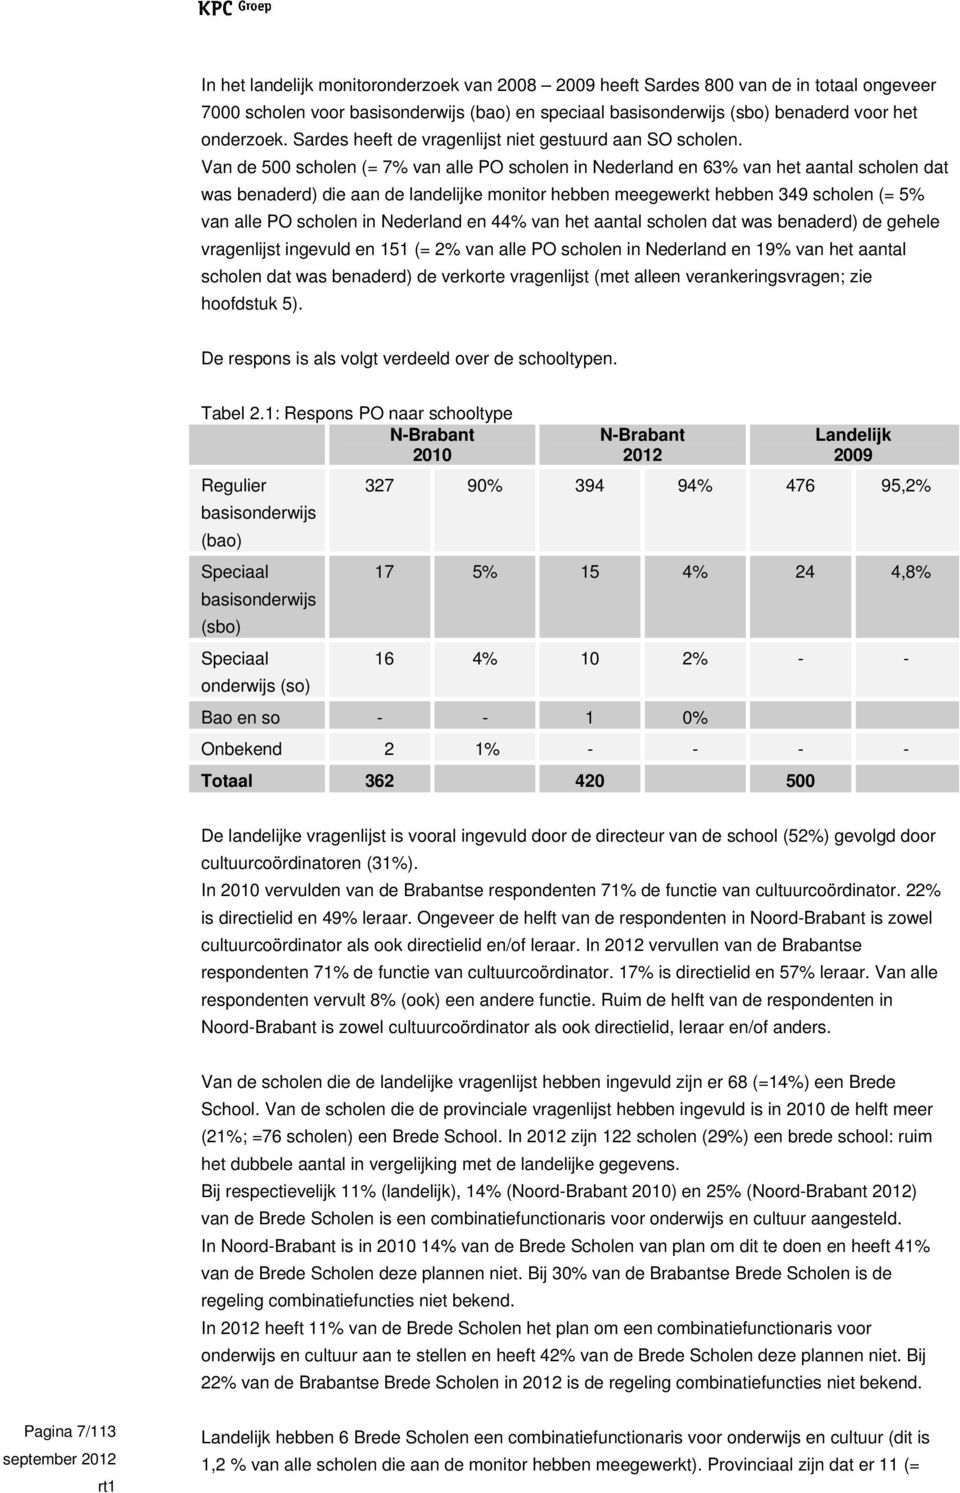 Van de 500 scholen (= 7% van alle PO scholen in Nederland en 63% van het aantal scholen dat was benaderd) die aan de landelijke monitor hebben meegewerkt hebben 349 scholen (= 5% van alle PO scholen